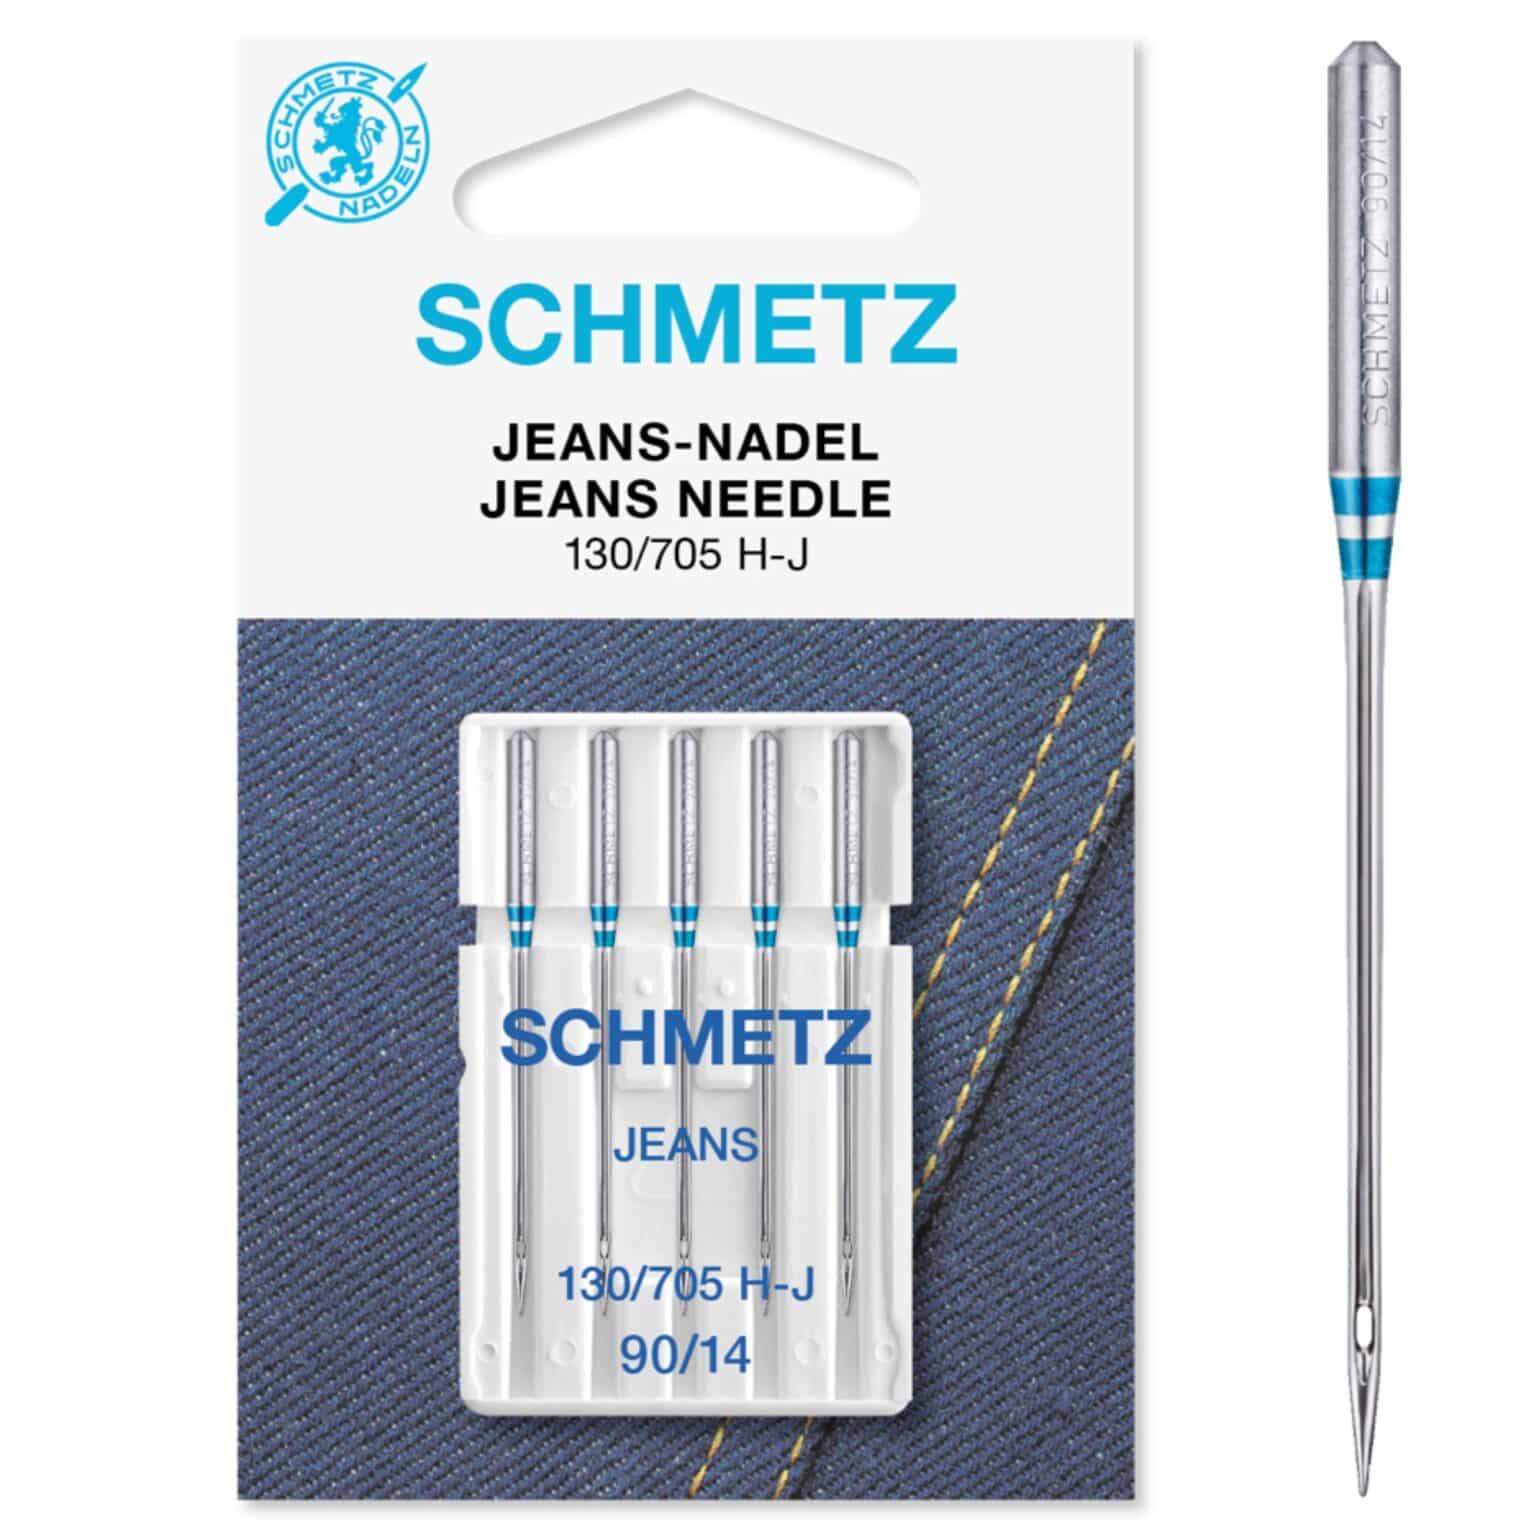 Schmetz Jeans Sewing Machine Needles - Size 90/14 - 130/705H